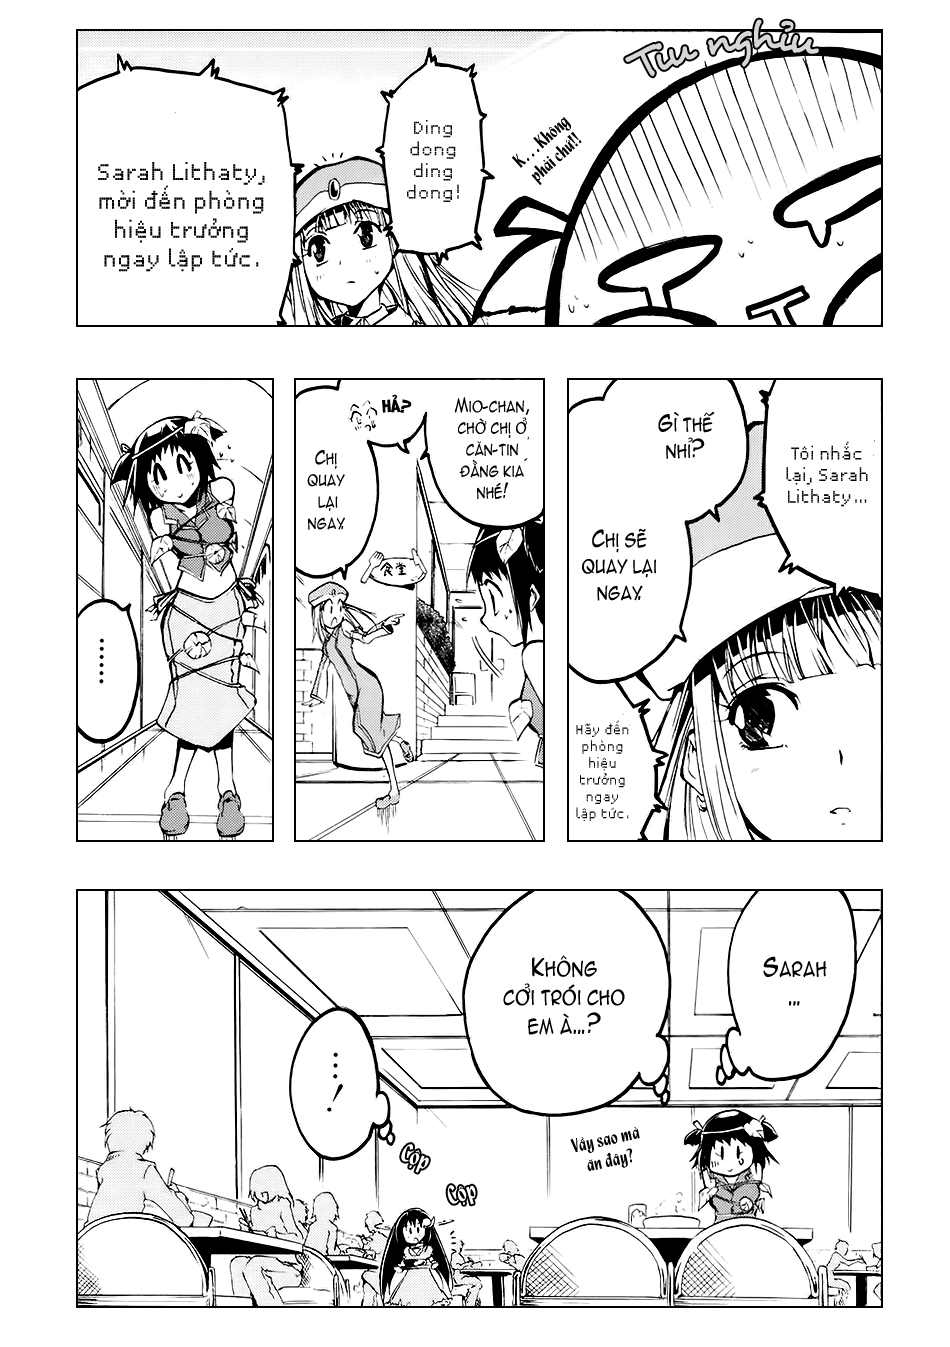 [Manga]: Esprit ESPRIT_01_046